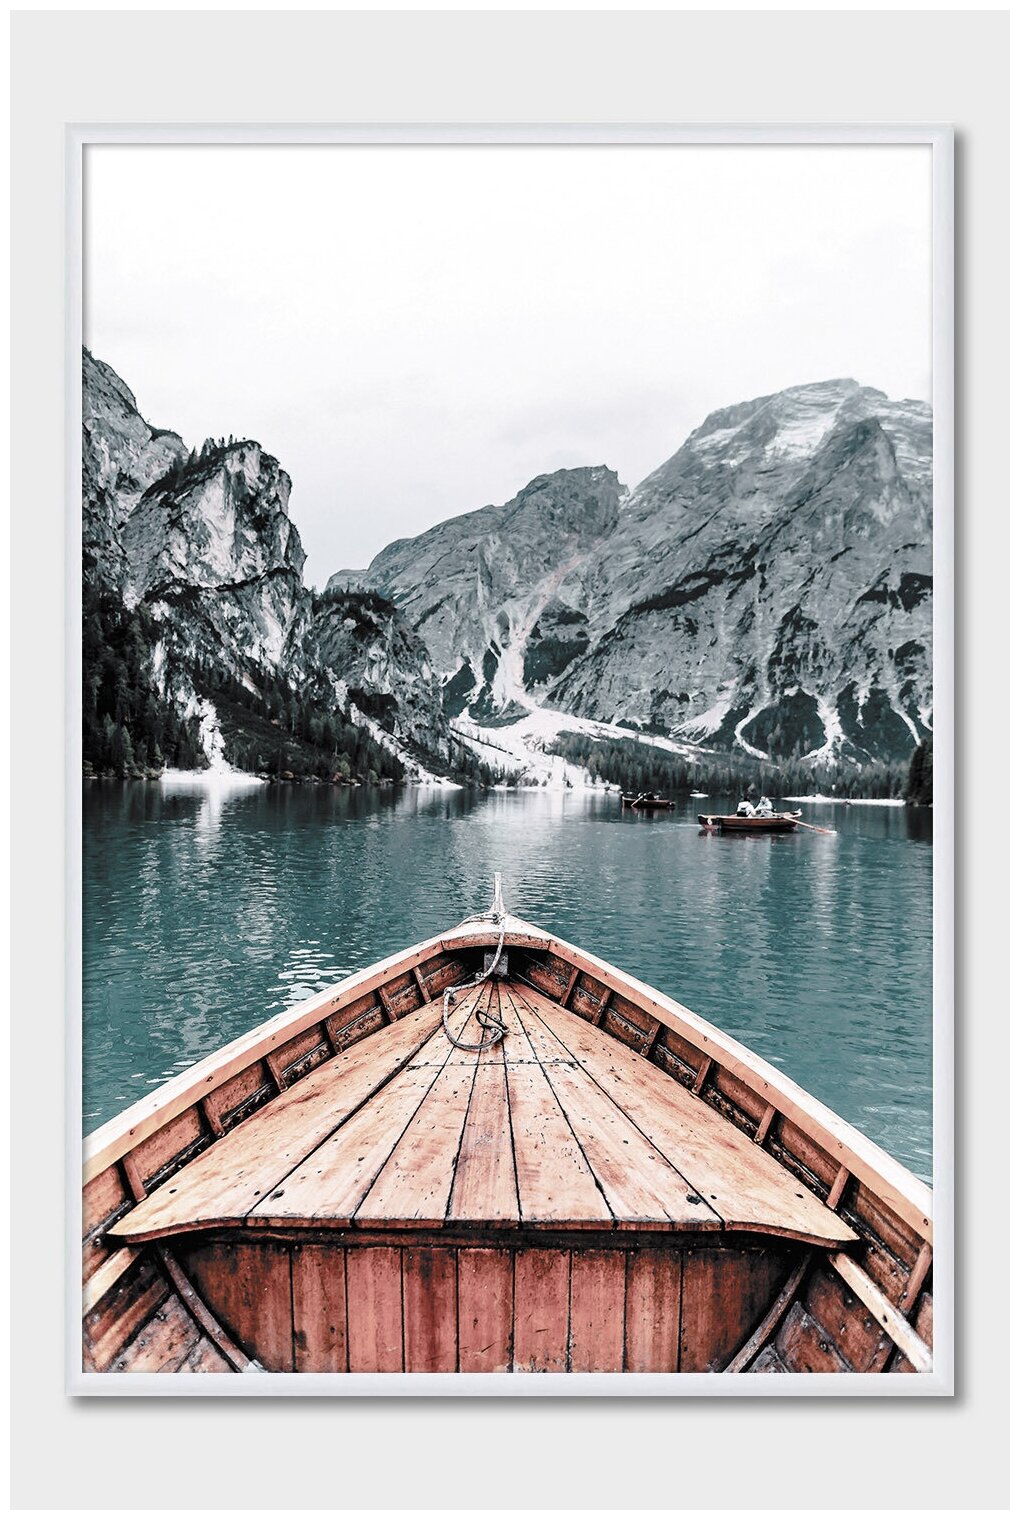 Постер на стену для интерьера Postermarkt Лодка на озере в горах, постер в белой рамке 40х50 см, постеры картины для интерьера в белой рамке